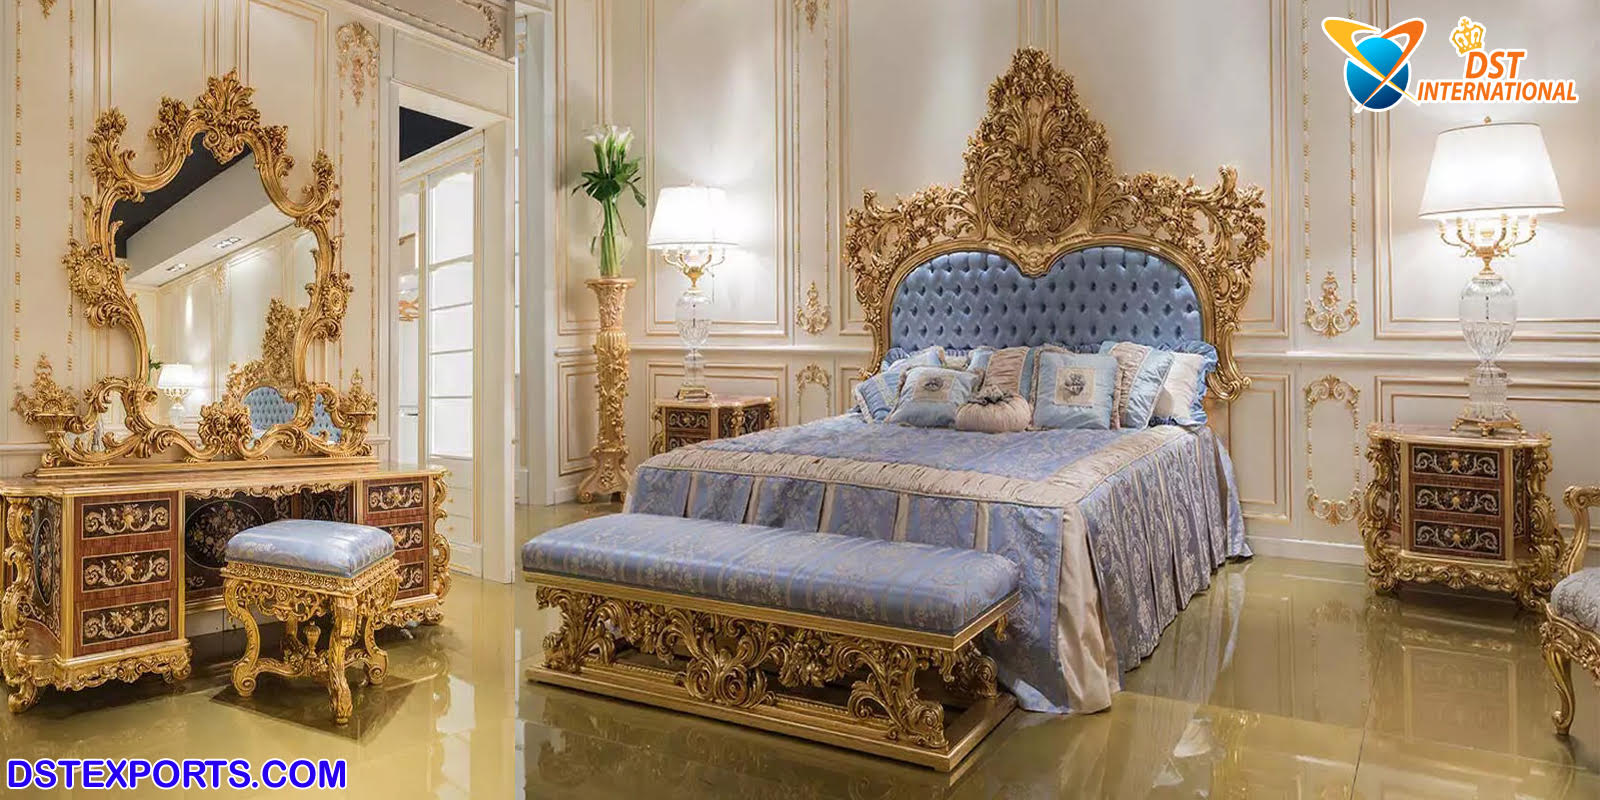 Royal King Size Bedroom Furniture Set, King Size Bedroom Divider